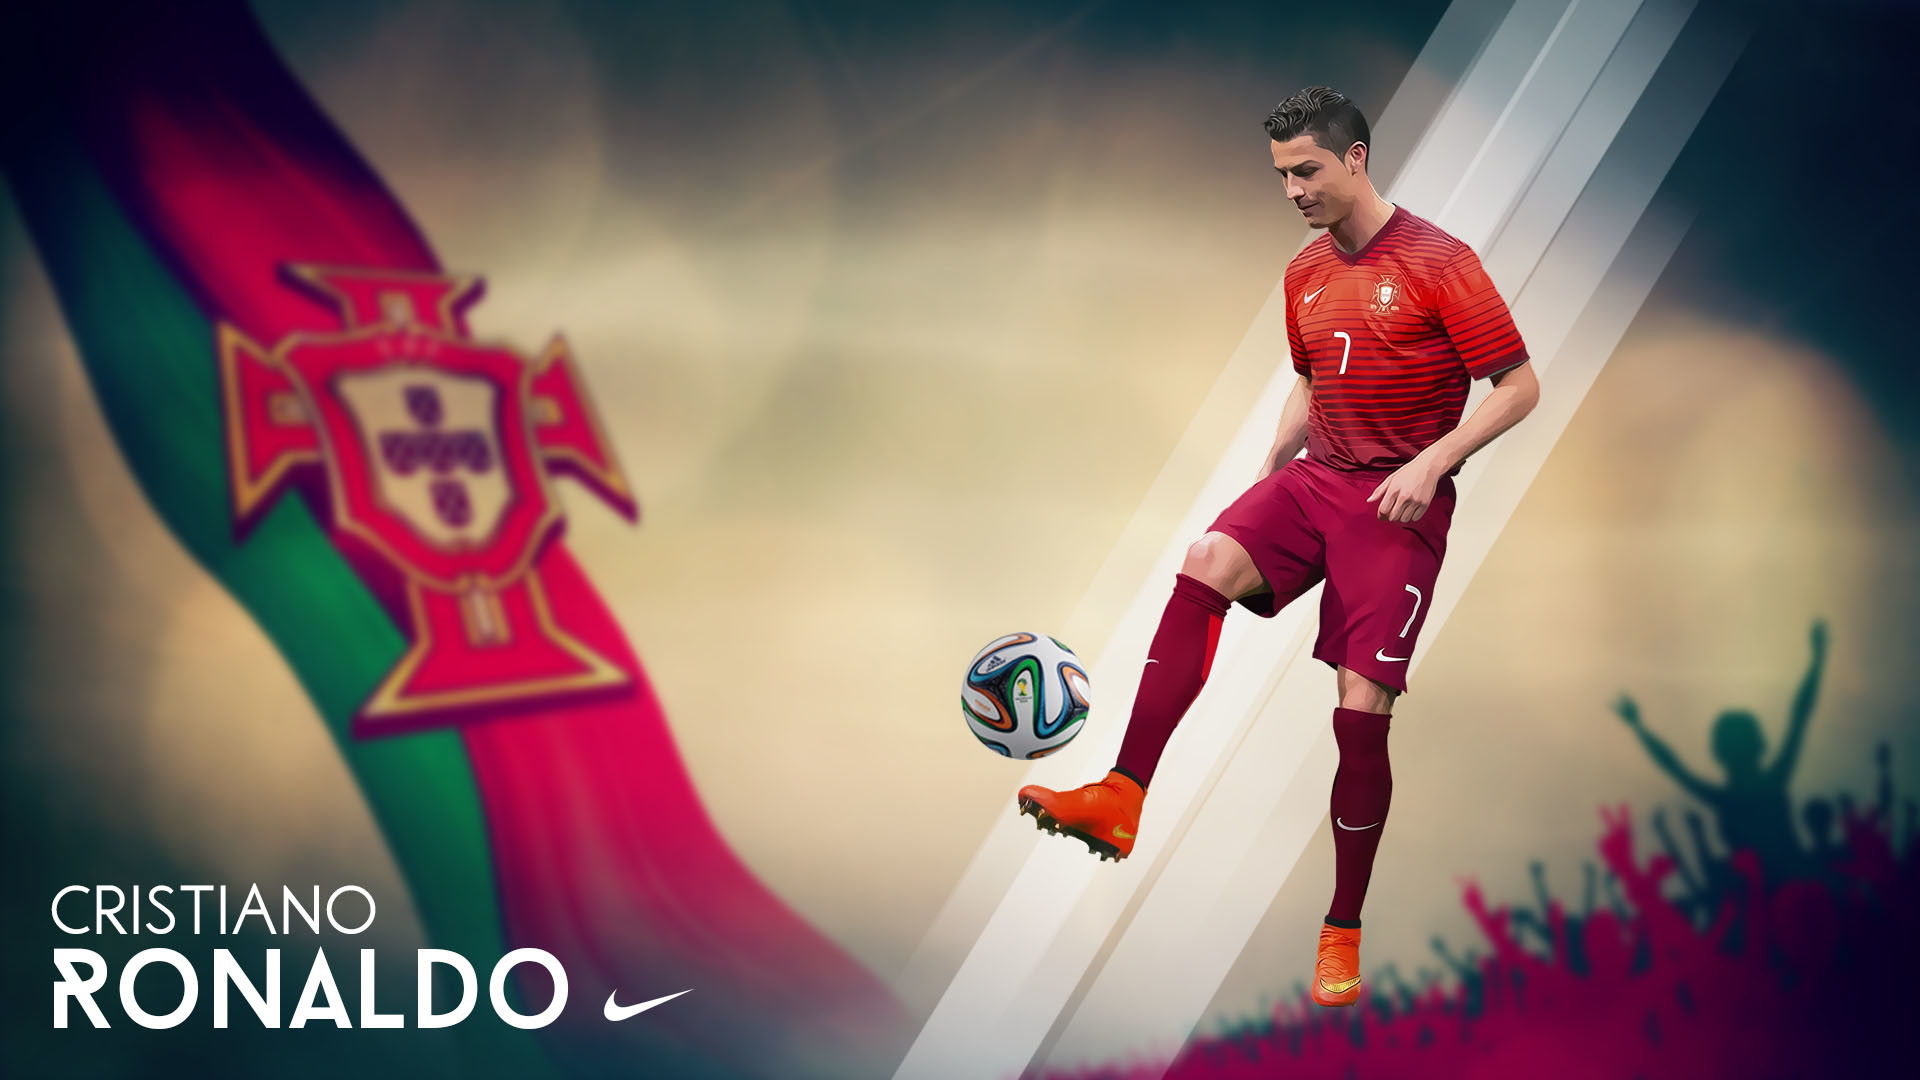 1920x1080 Cristiano Ronaldo Portugal FIFA World Cup 2014 wallpaper